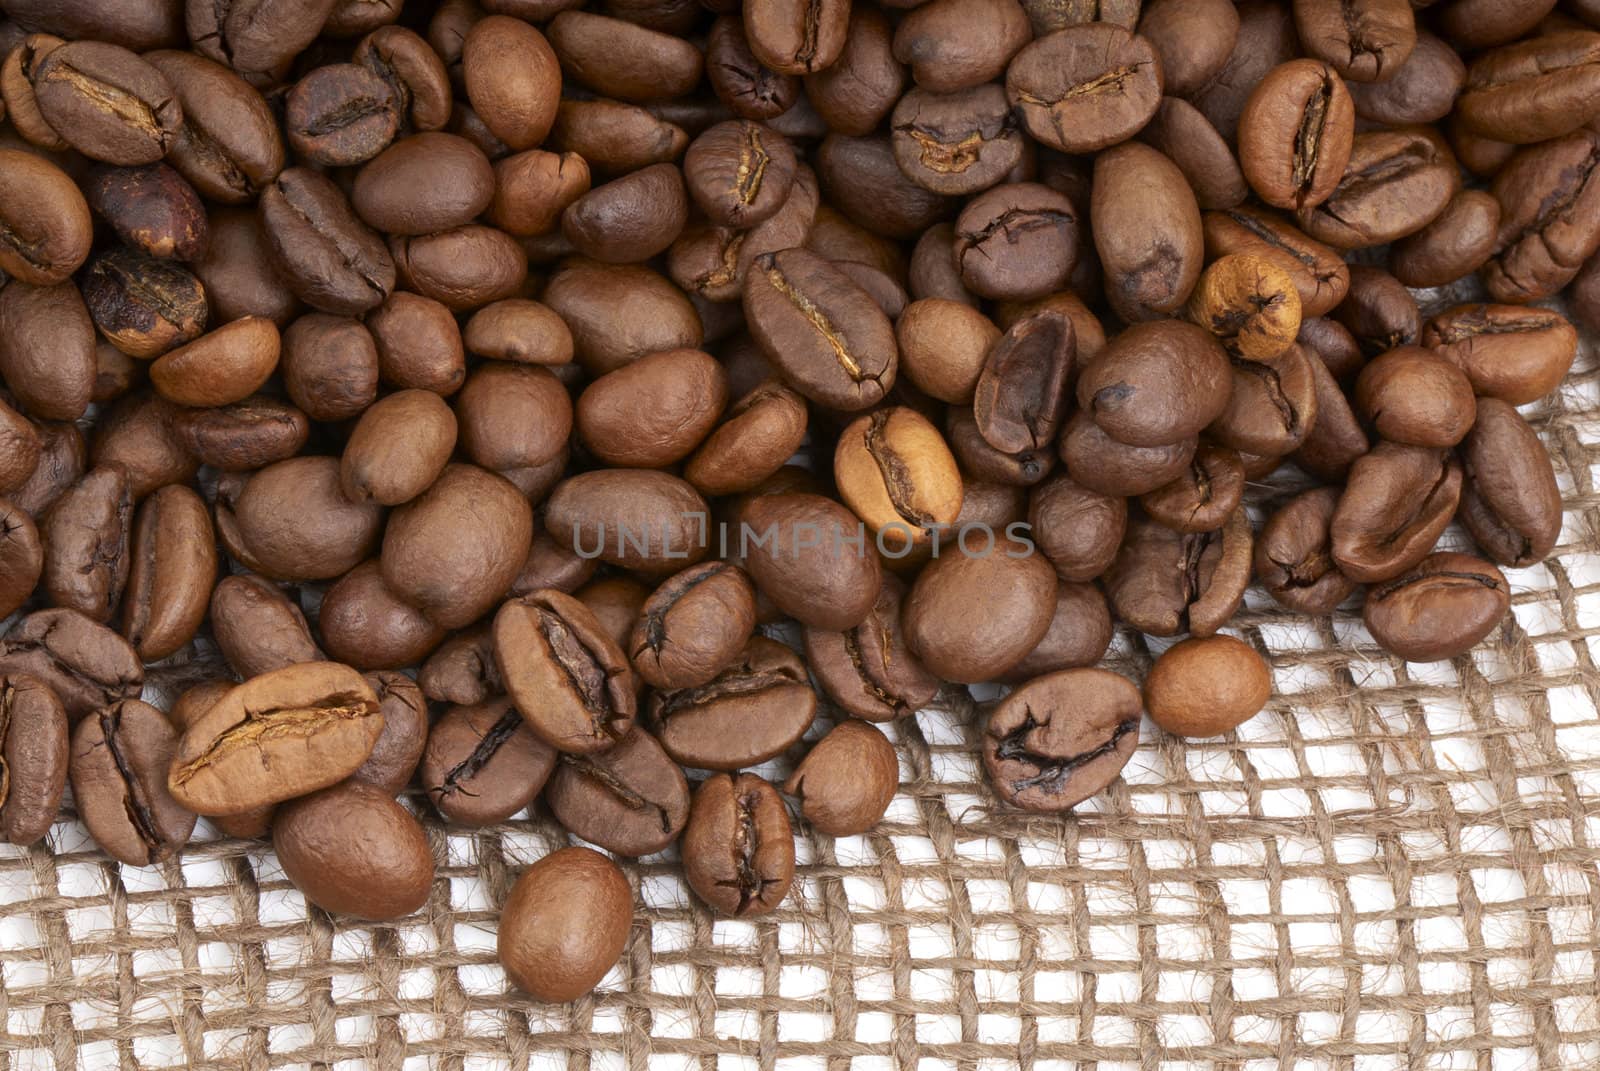 Coffee beans-2 by Kamensky